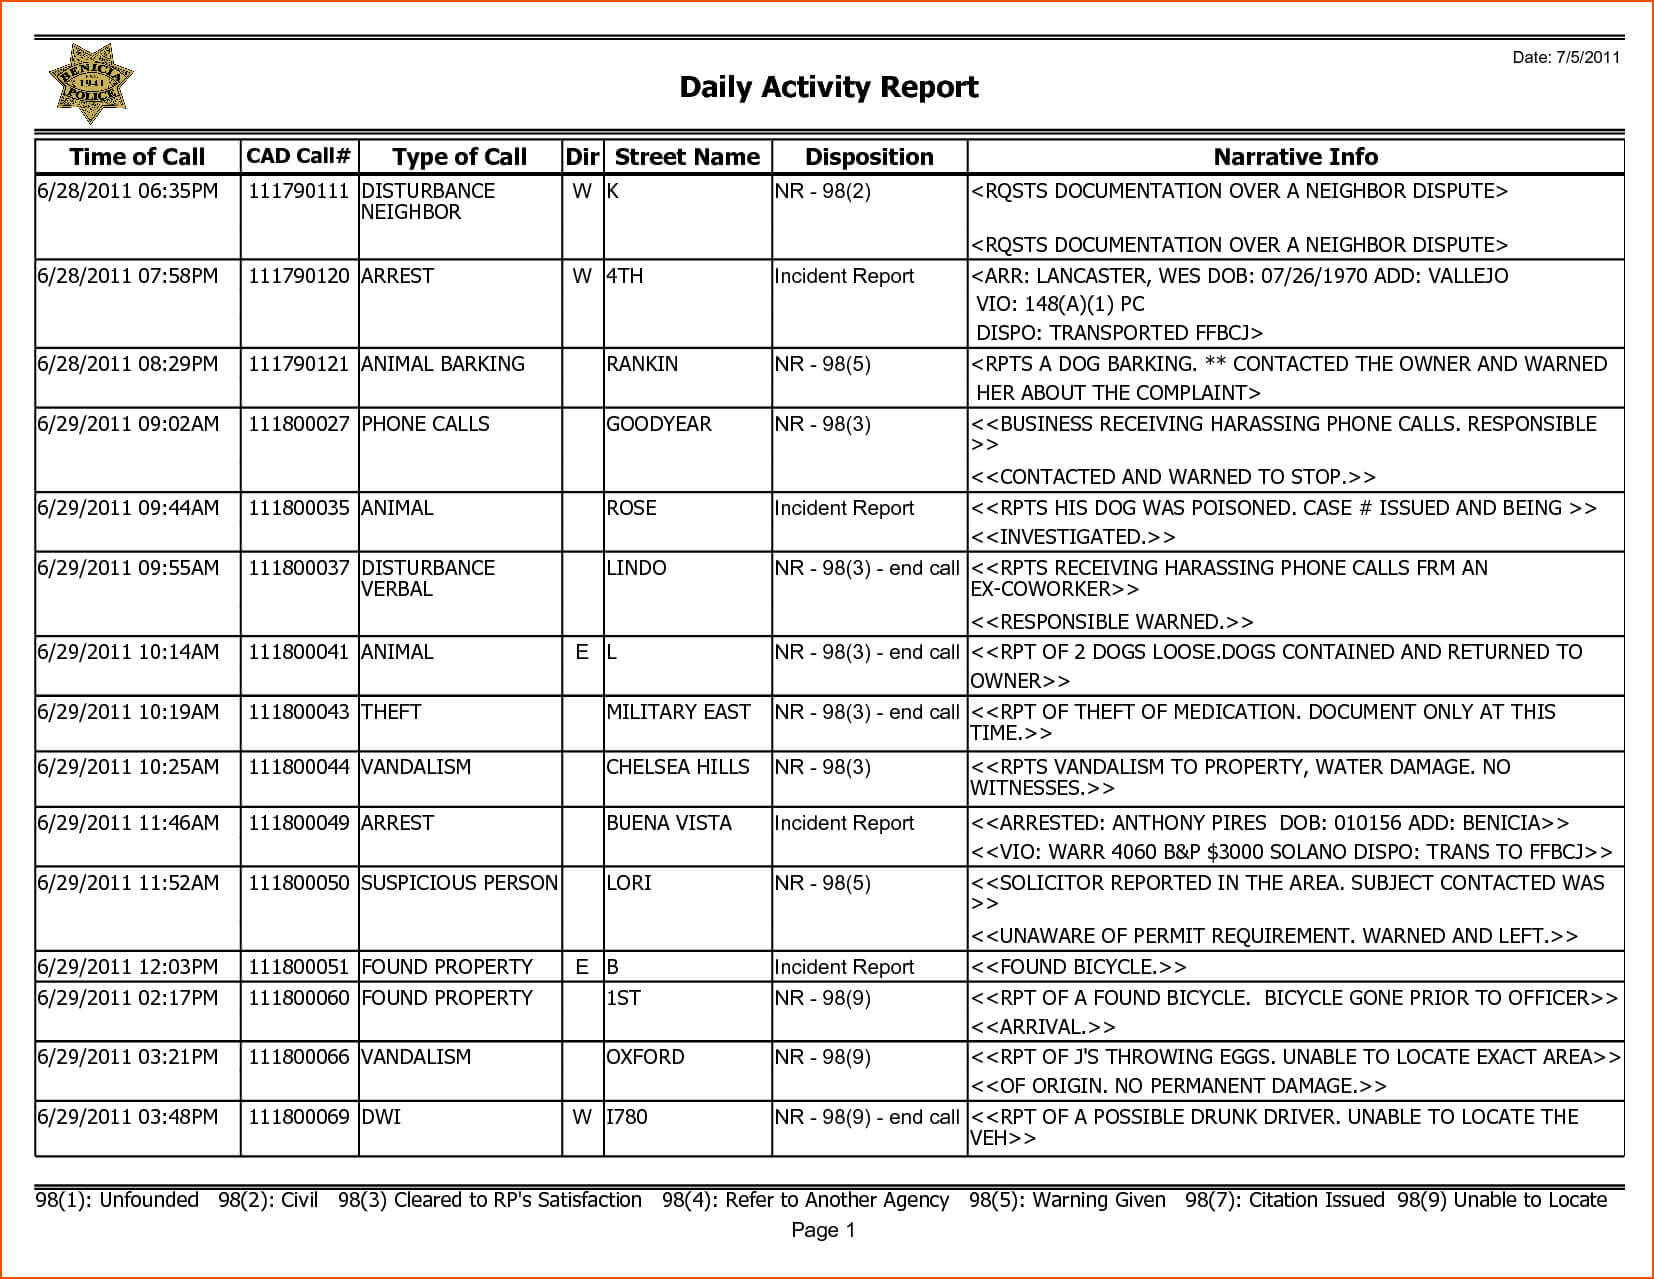 001 Weekly Activity Report Template Activities Surprising With Regard To Weekly Activity Report Template